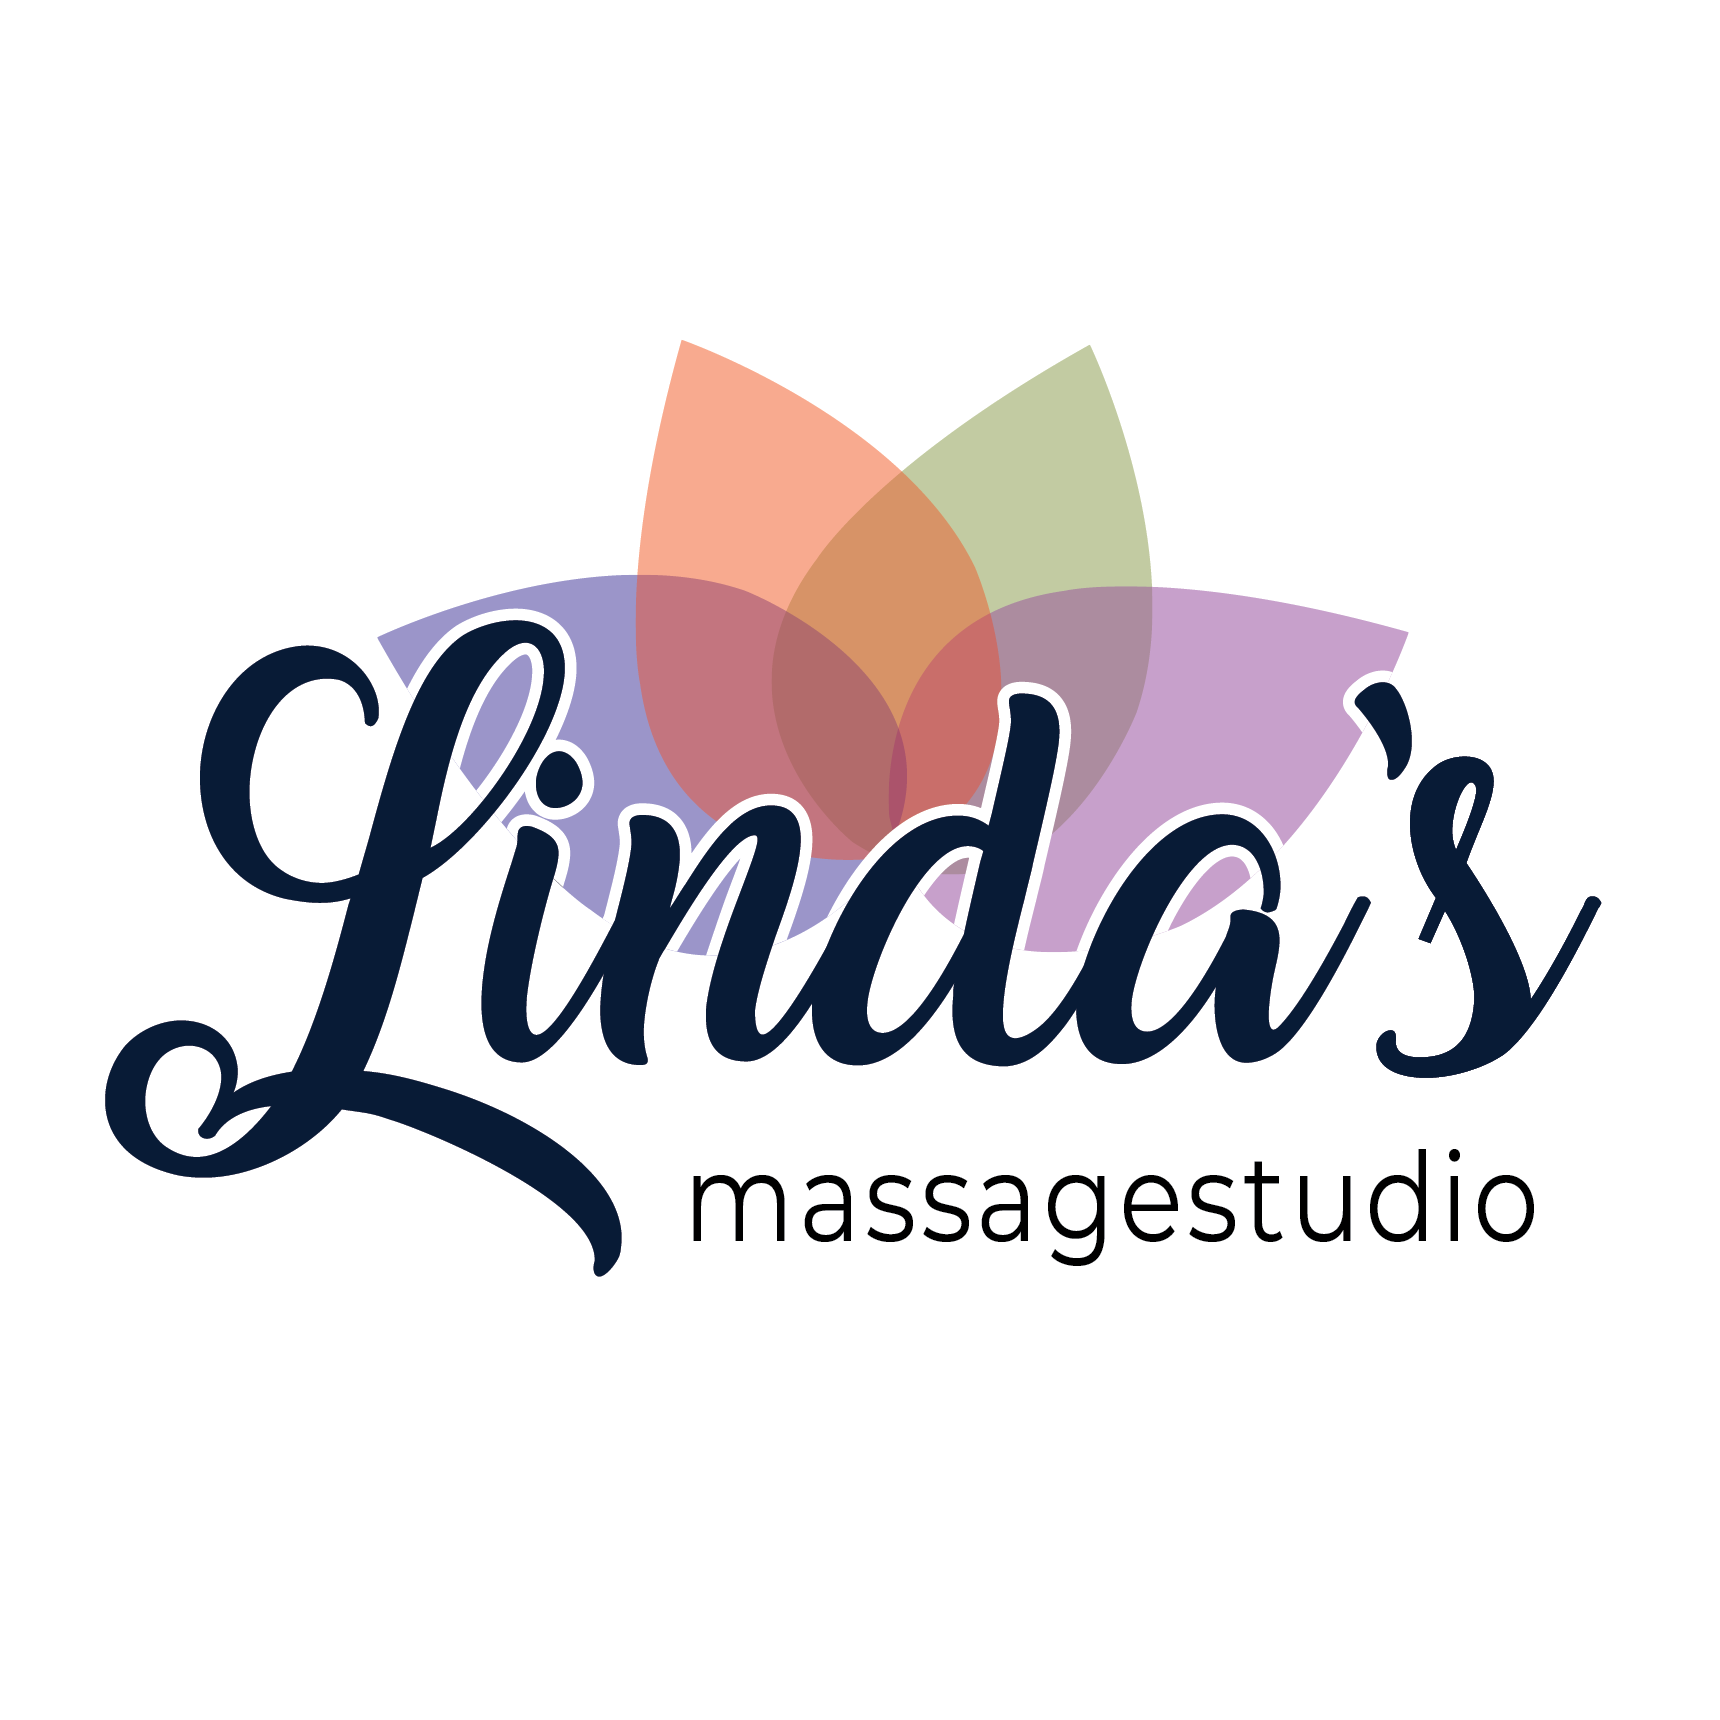 Linda's Massagestudio